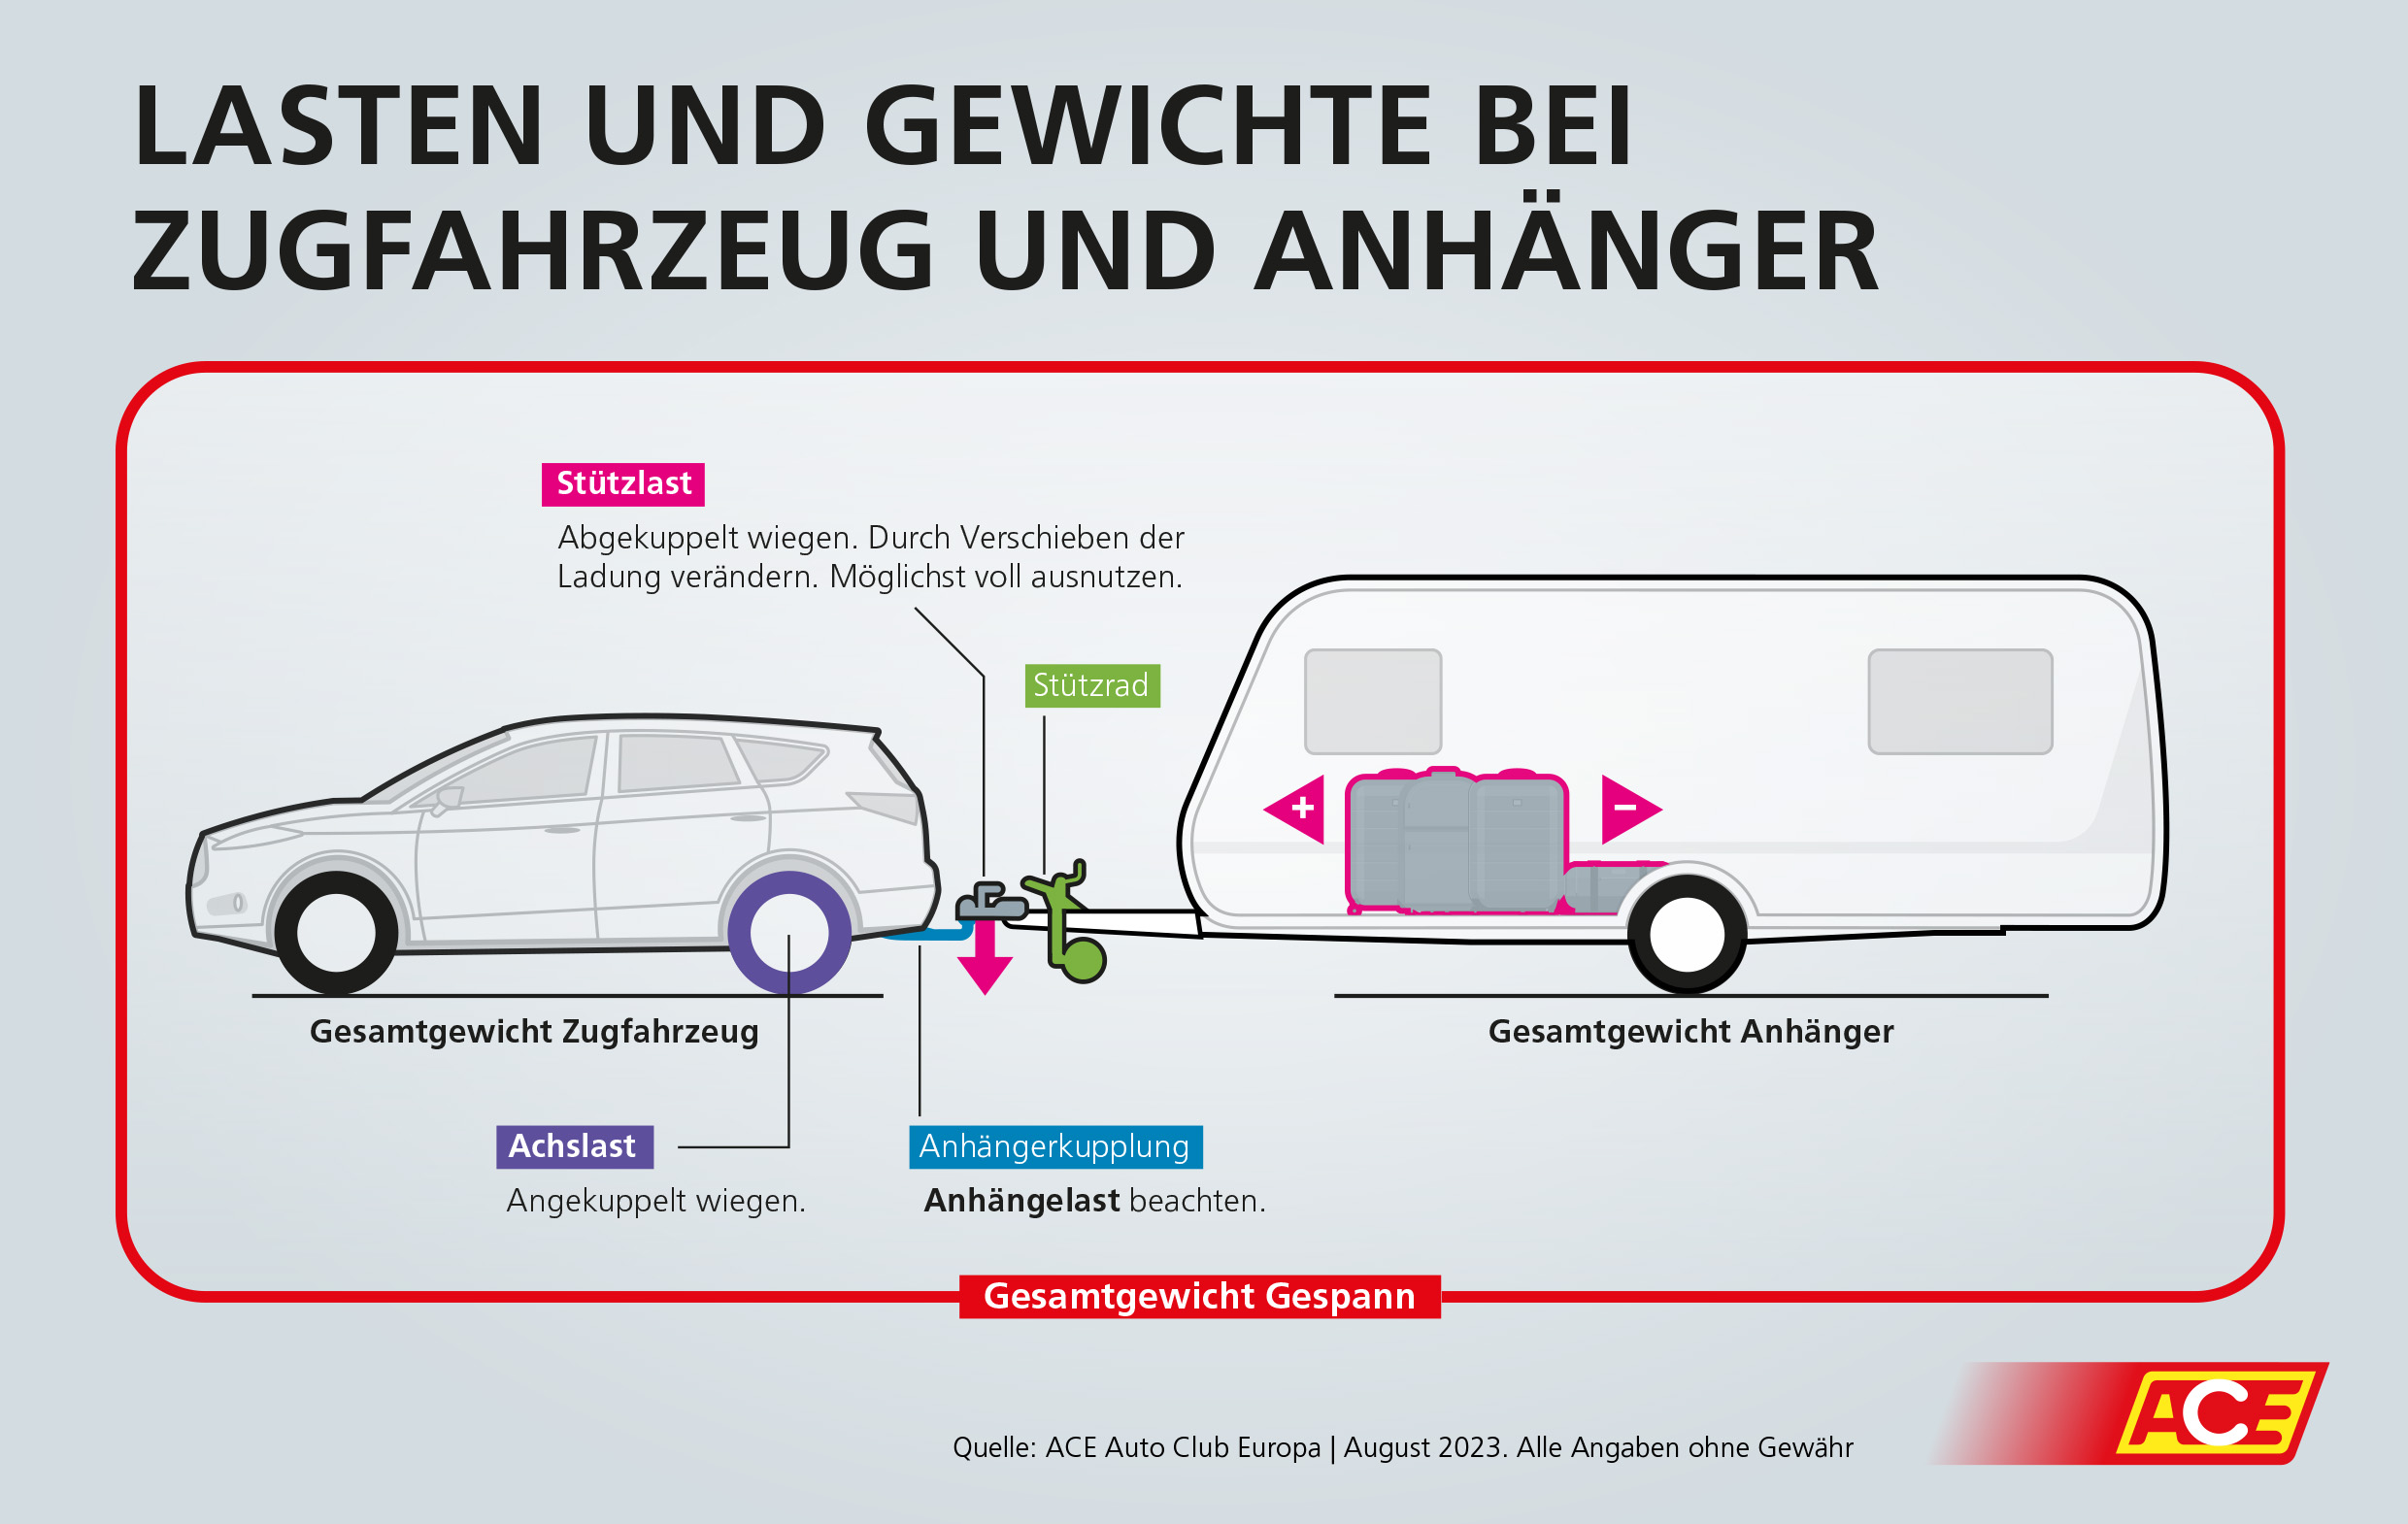 https://images.ace.de/Lasten-und-Gewichte-bei-Zugfahrzeug-und-Anhaenger-klein.jpg